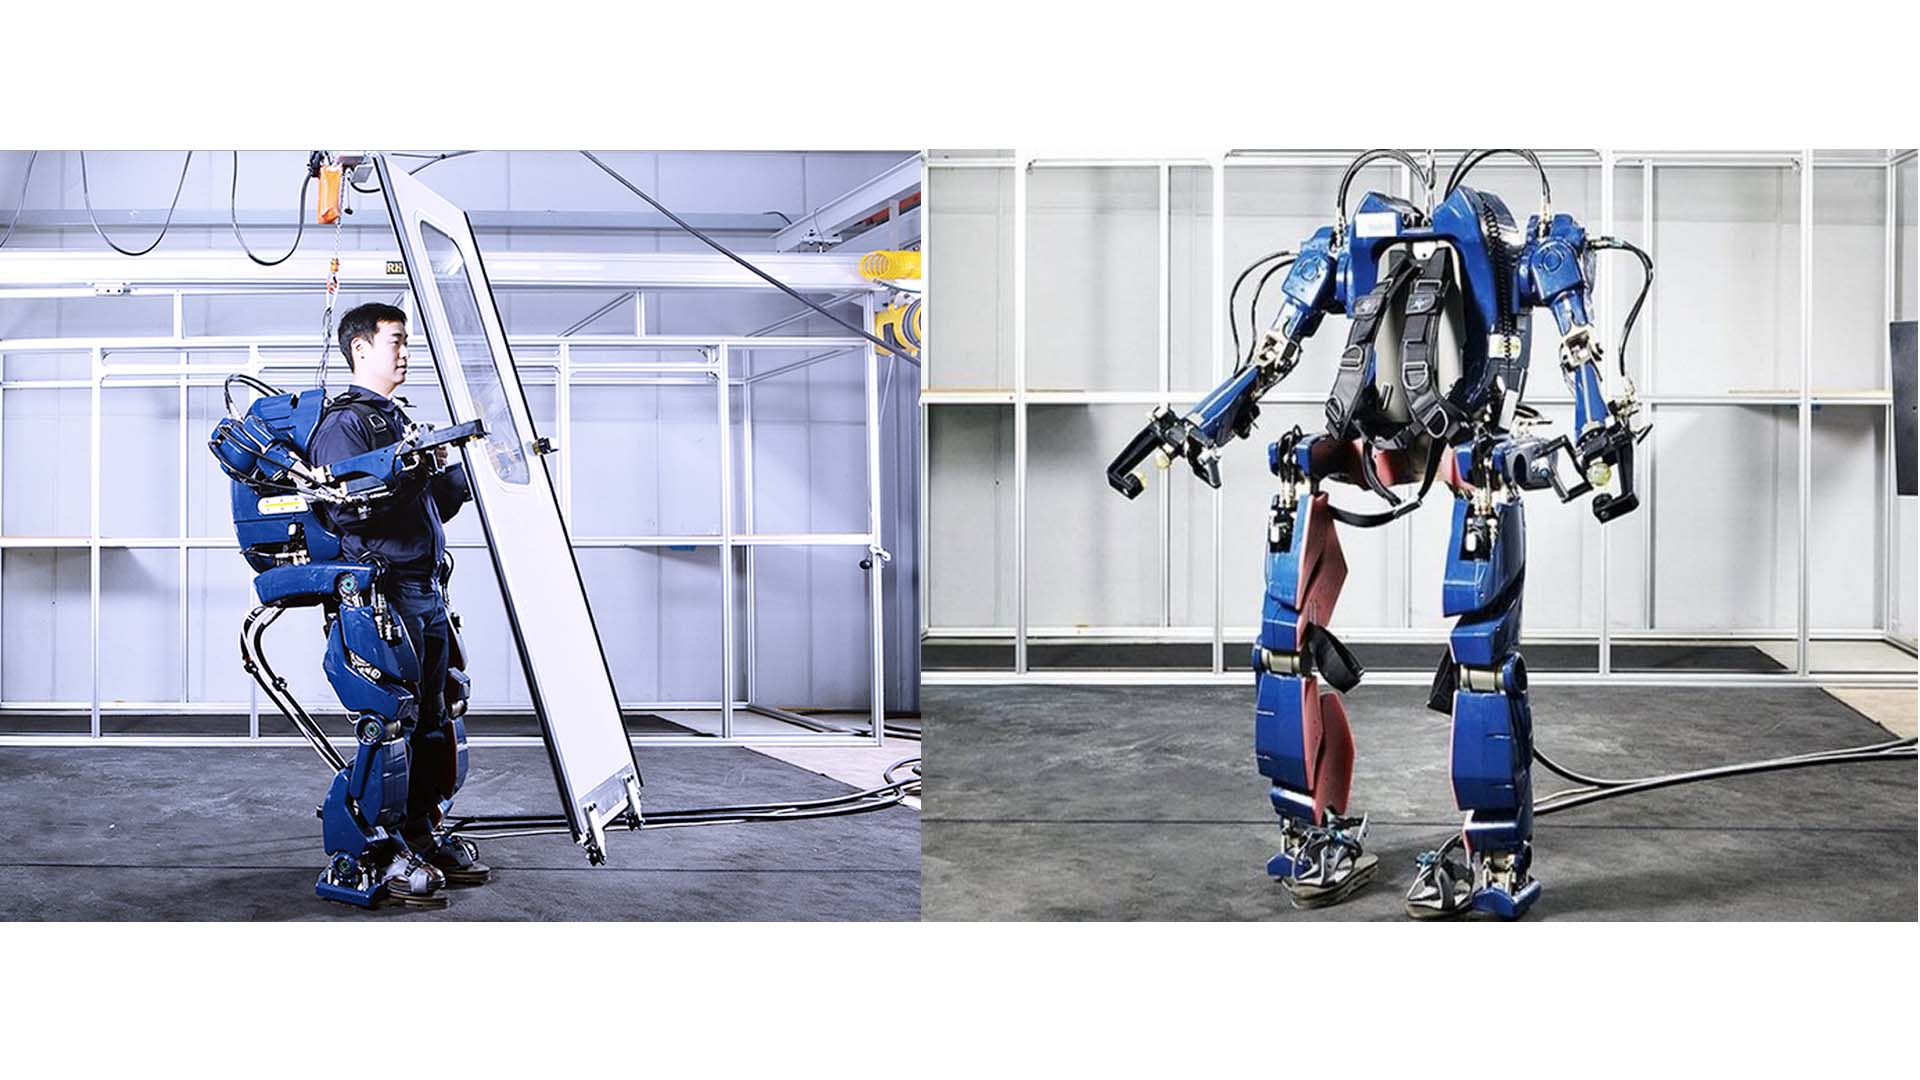 La compañía Hyundai presentó un nuevo exoesqueleto capaz de levantar objetos bastante pesados sin necesidad de mucho esfuerzo